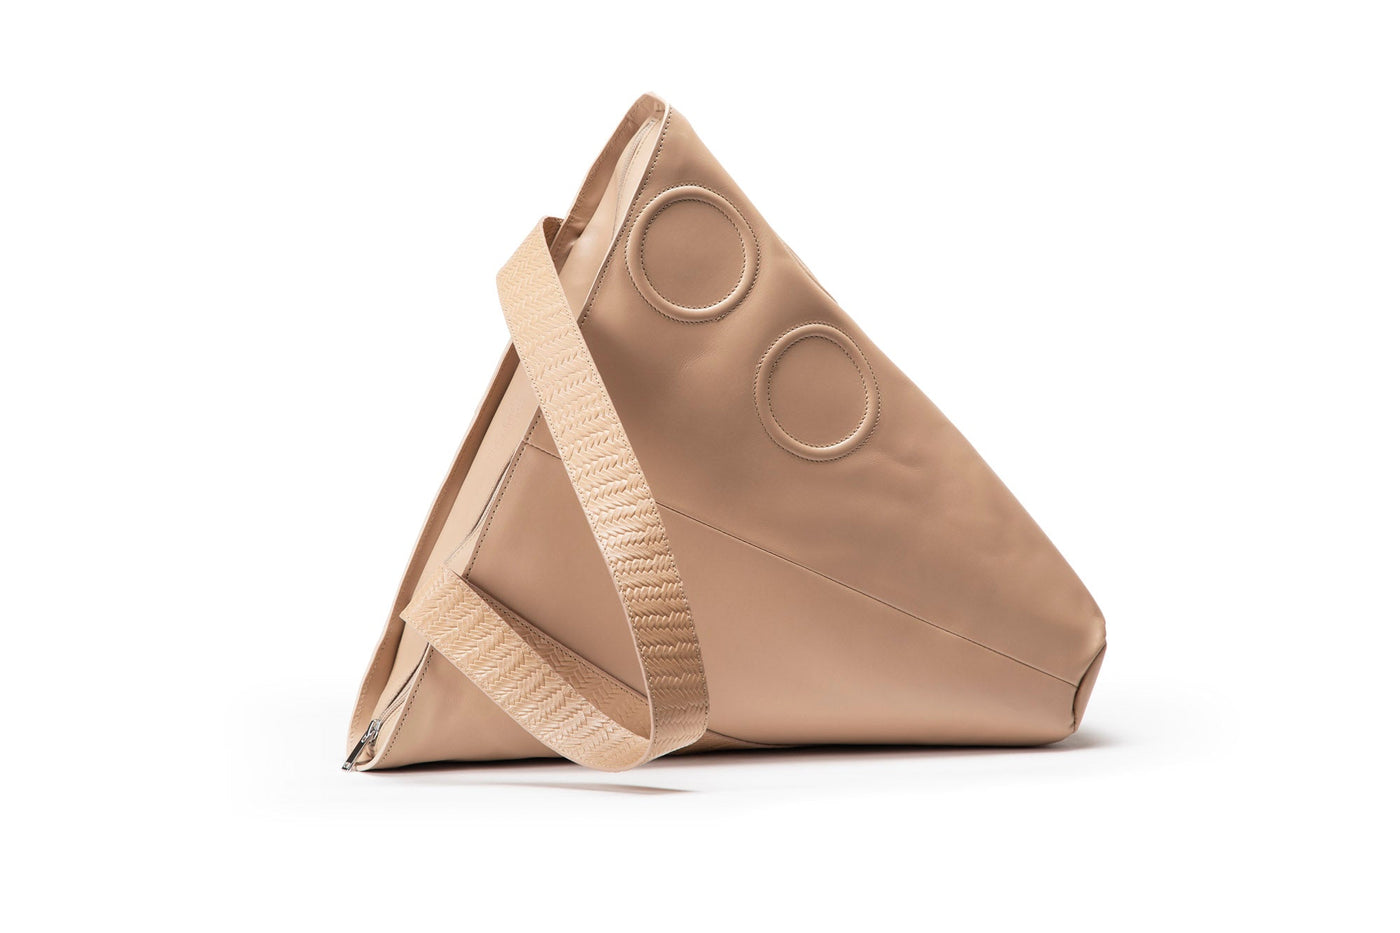 Triangular Shopper | Beige / Woven Strap